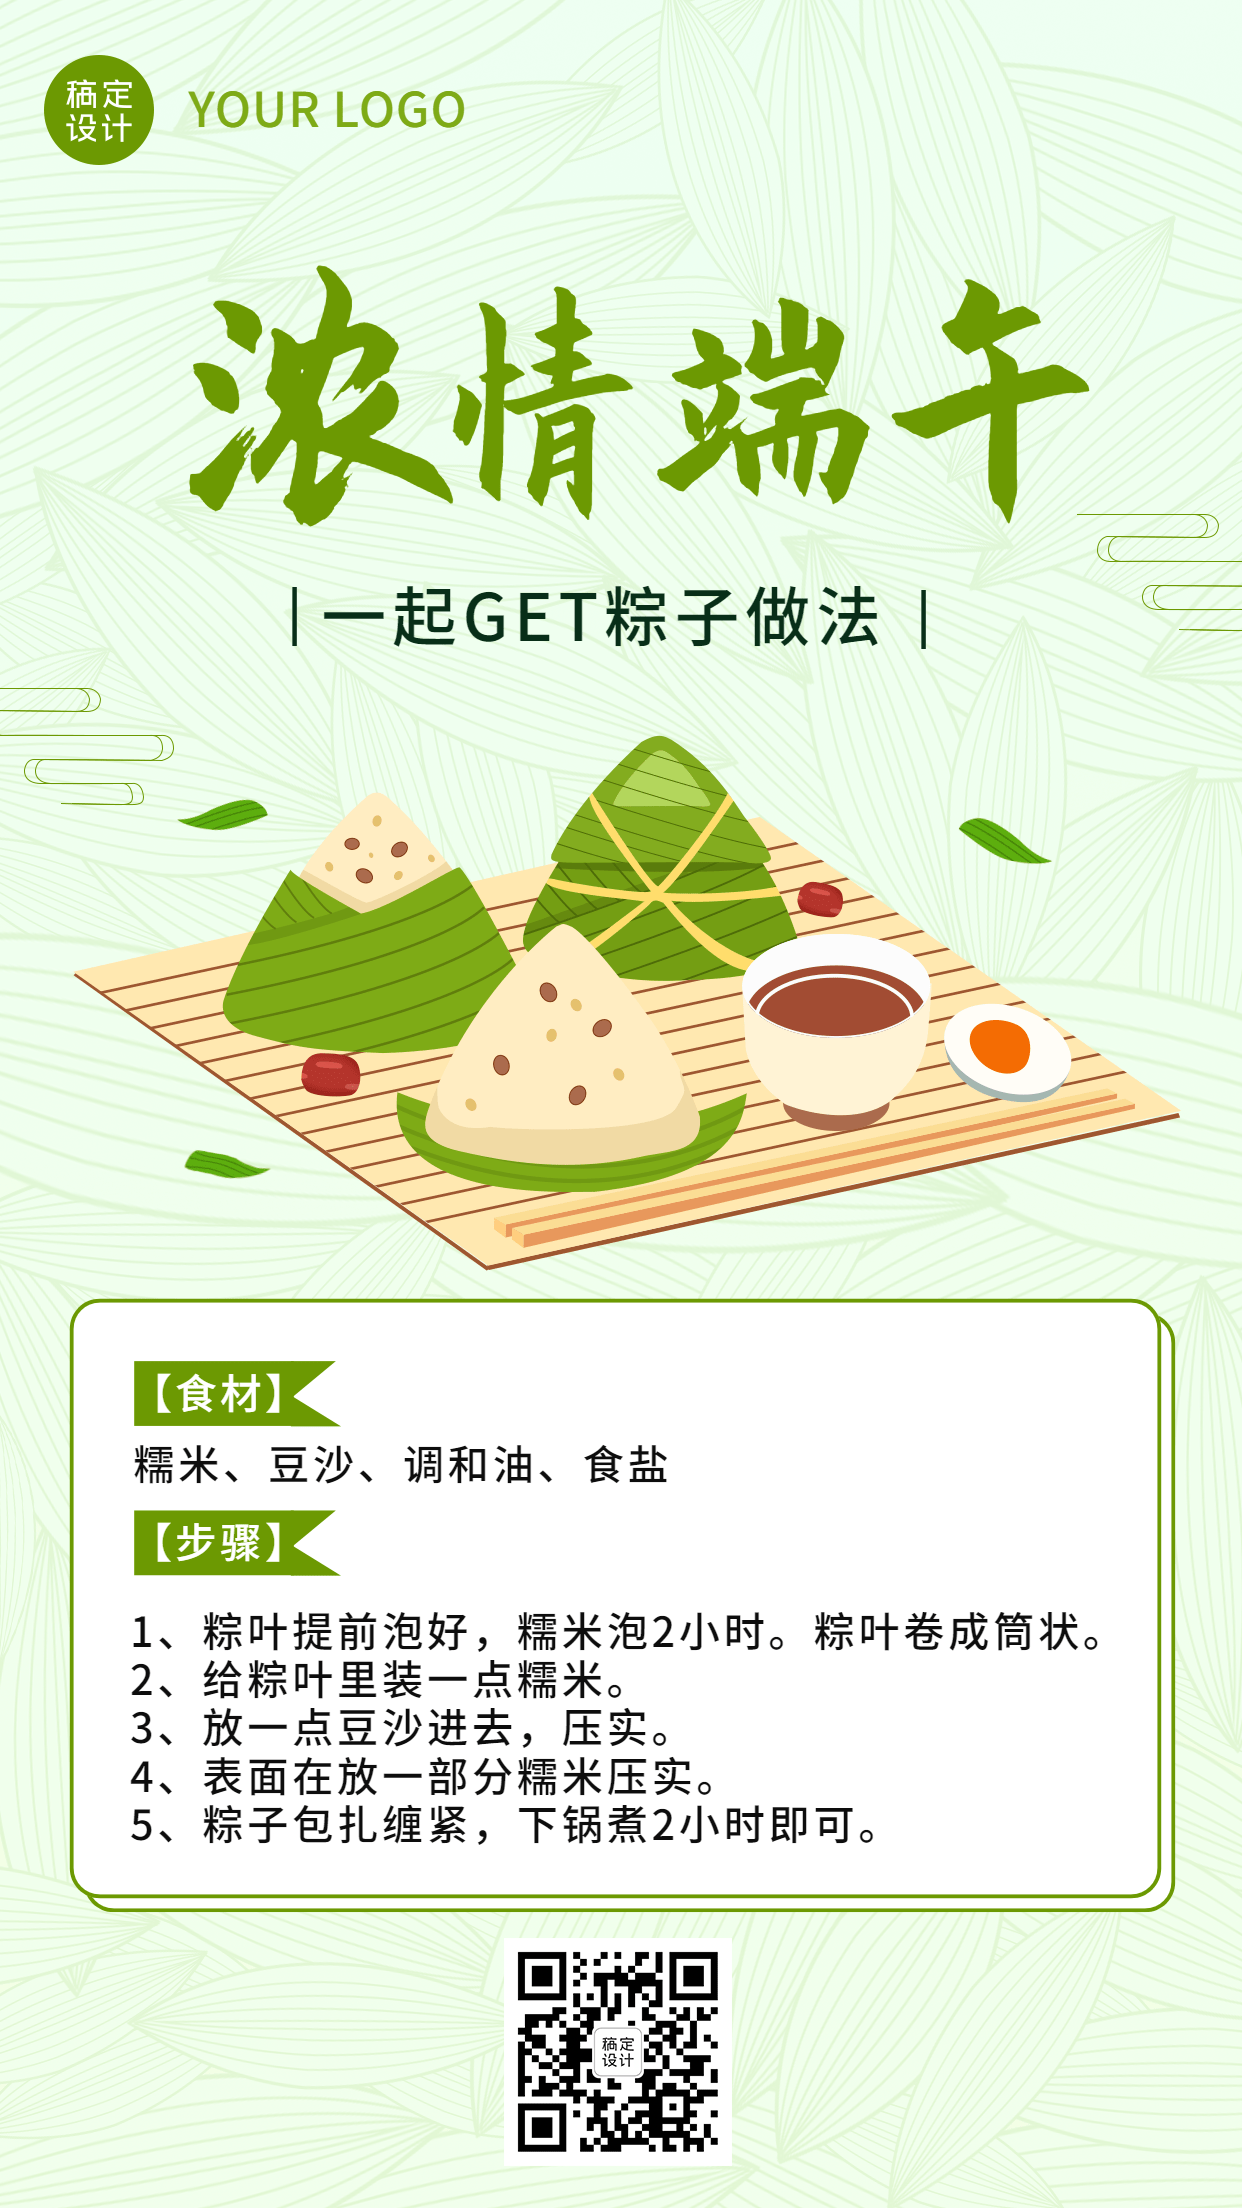 端午节粽子制作方法科普手机海报